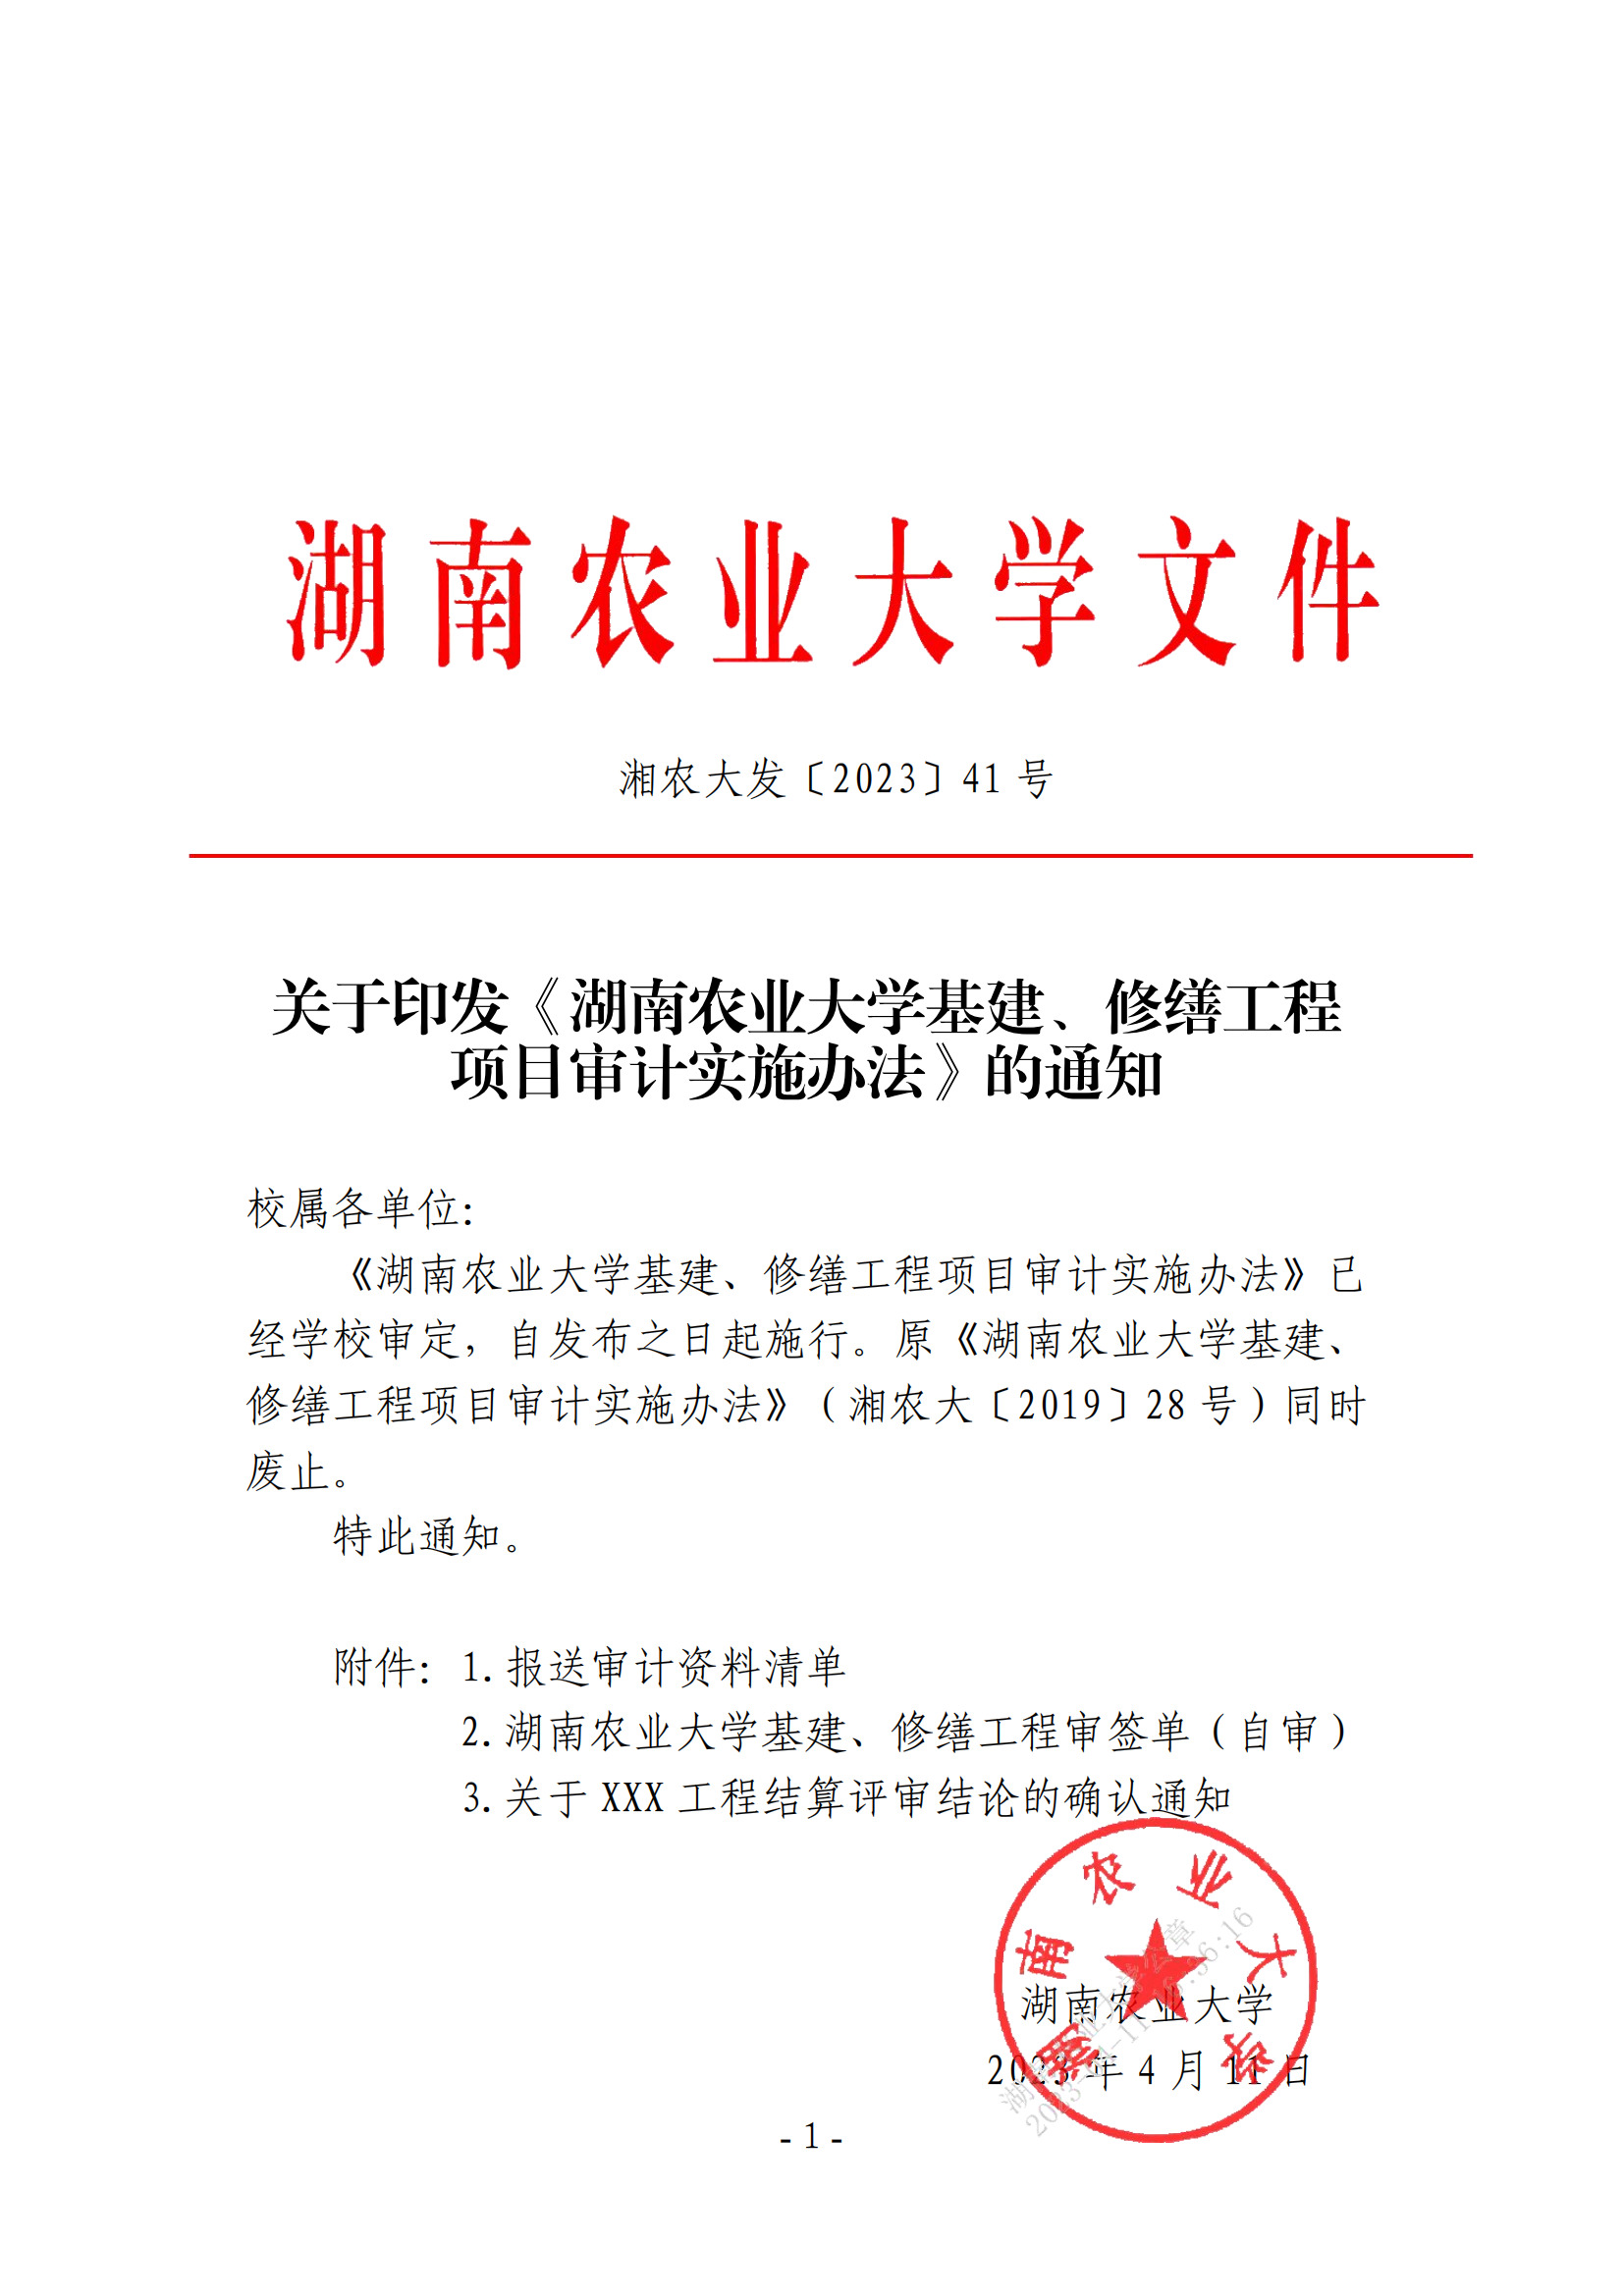 关于印发《湖南农业大学基建、修缮工程项目审计实施办法》的通知-正文_00.png